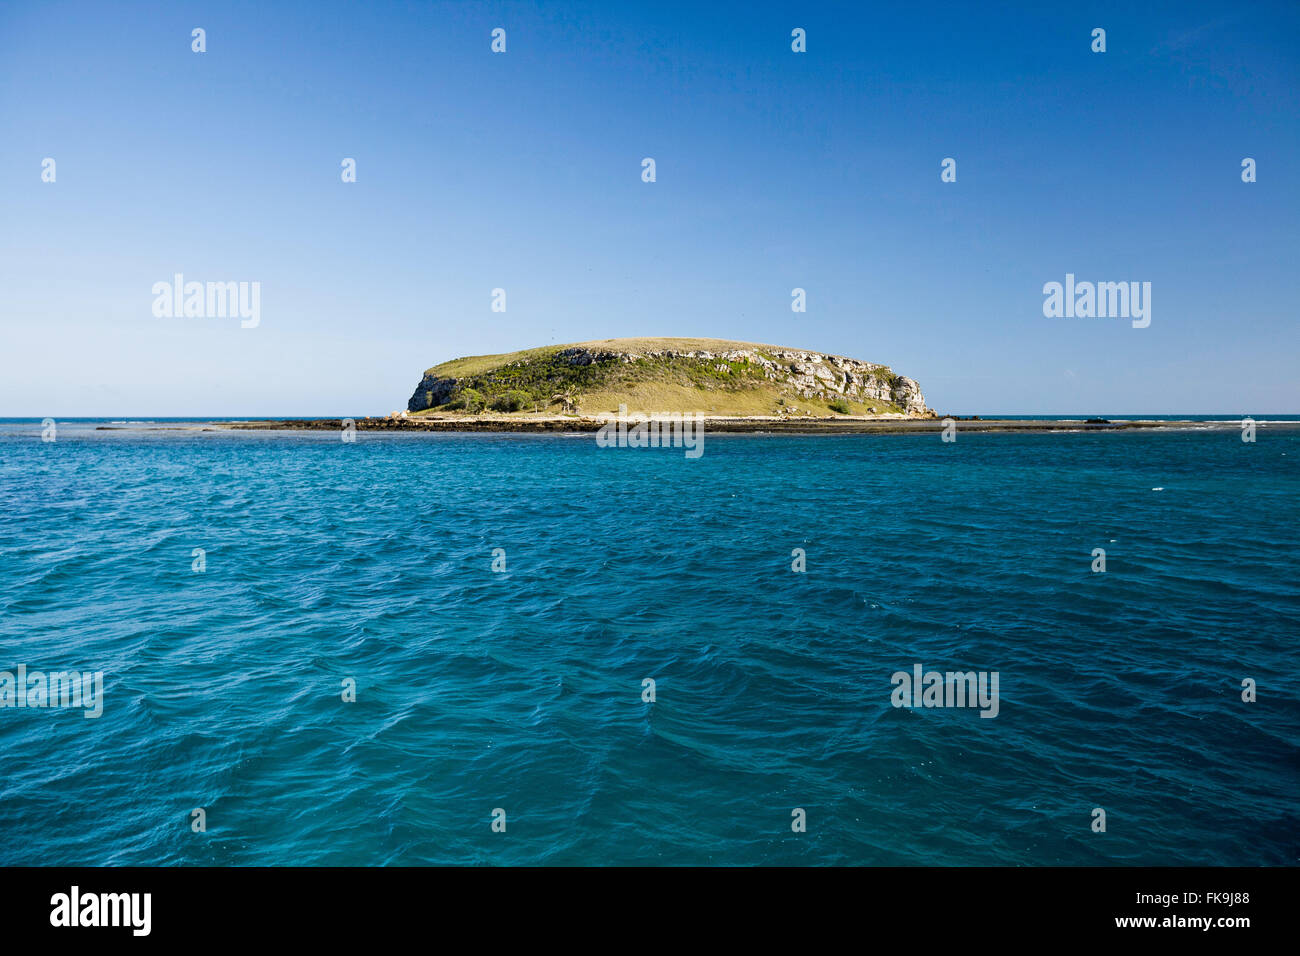 Isola rotonda immagini e fotografie stock ad alta risoluzione - Alamy